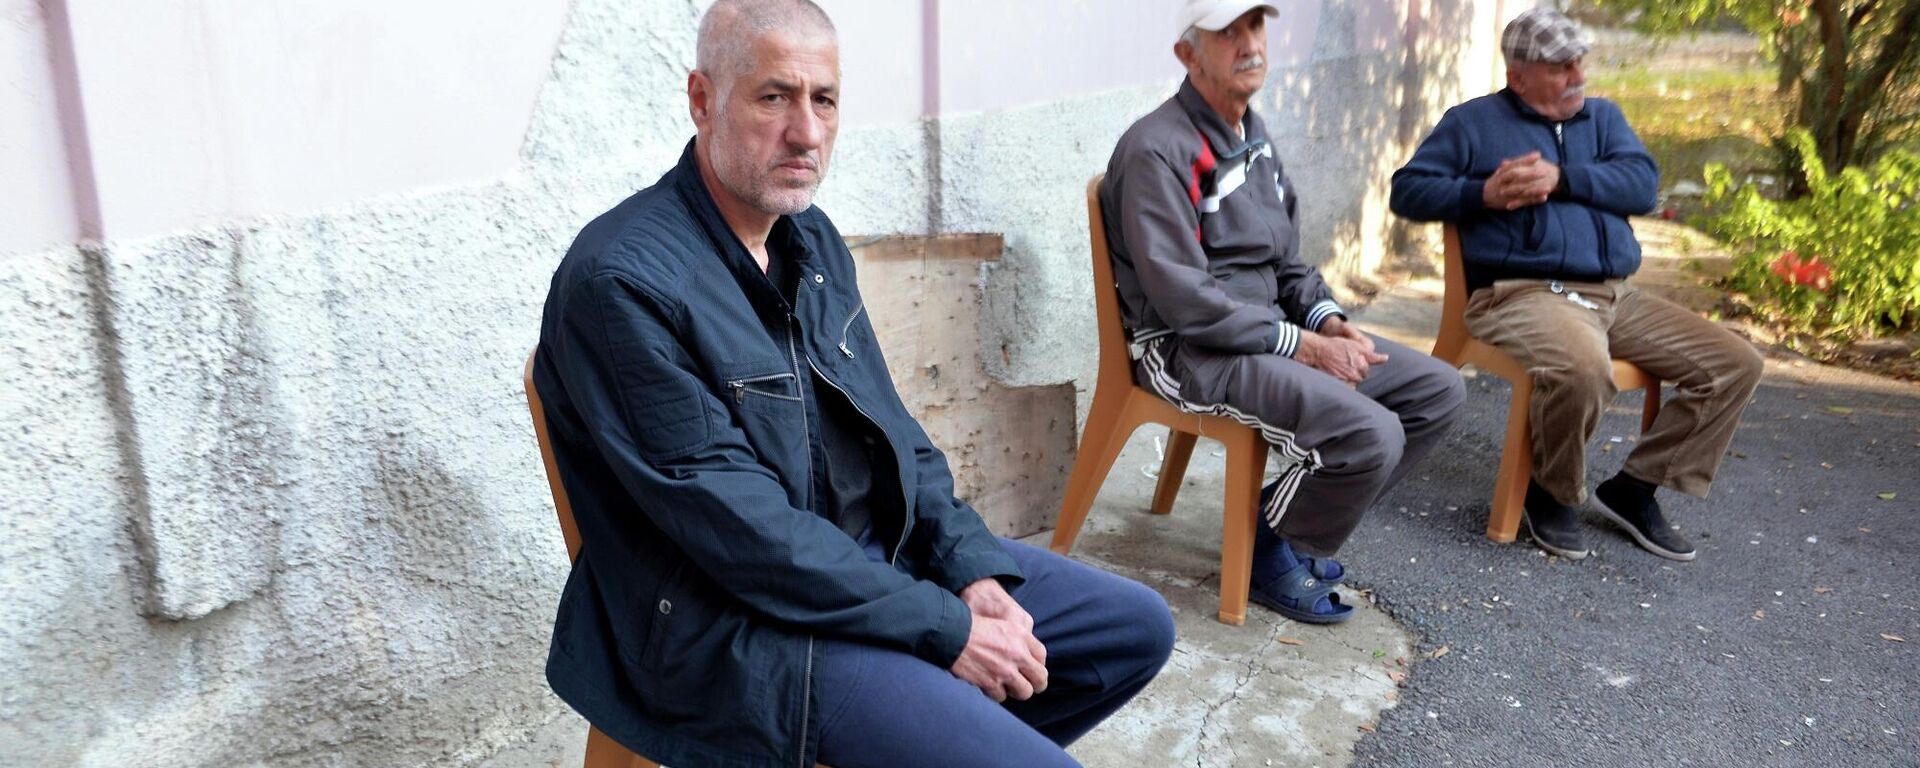 Libya’nın doğusunda alıkonulduktan yaklaşık 2 yıl sonra kurtarılan 7 Türk vatandaşından pastane işletmecisi Halil Gözel,  - Sputnik Türkiye, 1920, 22.11.2021